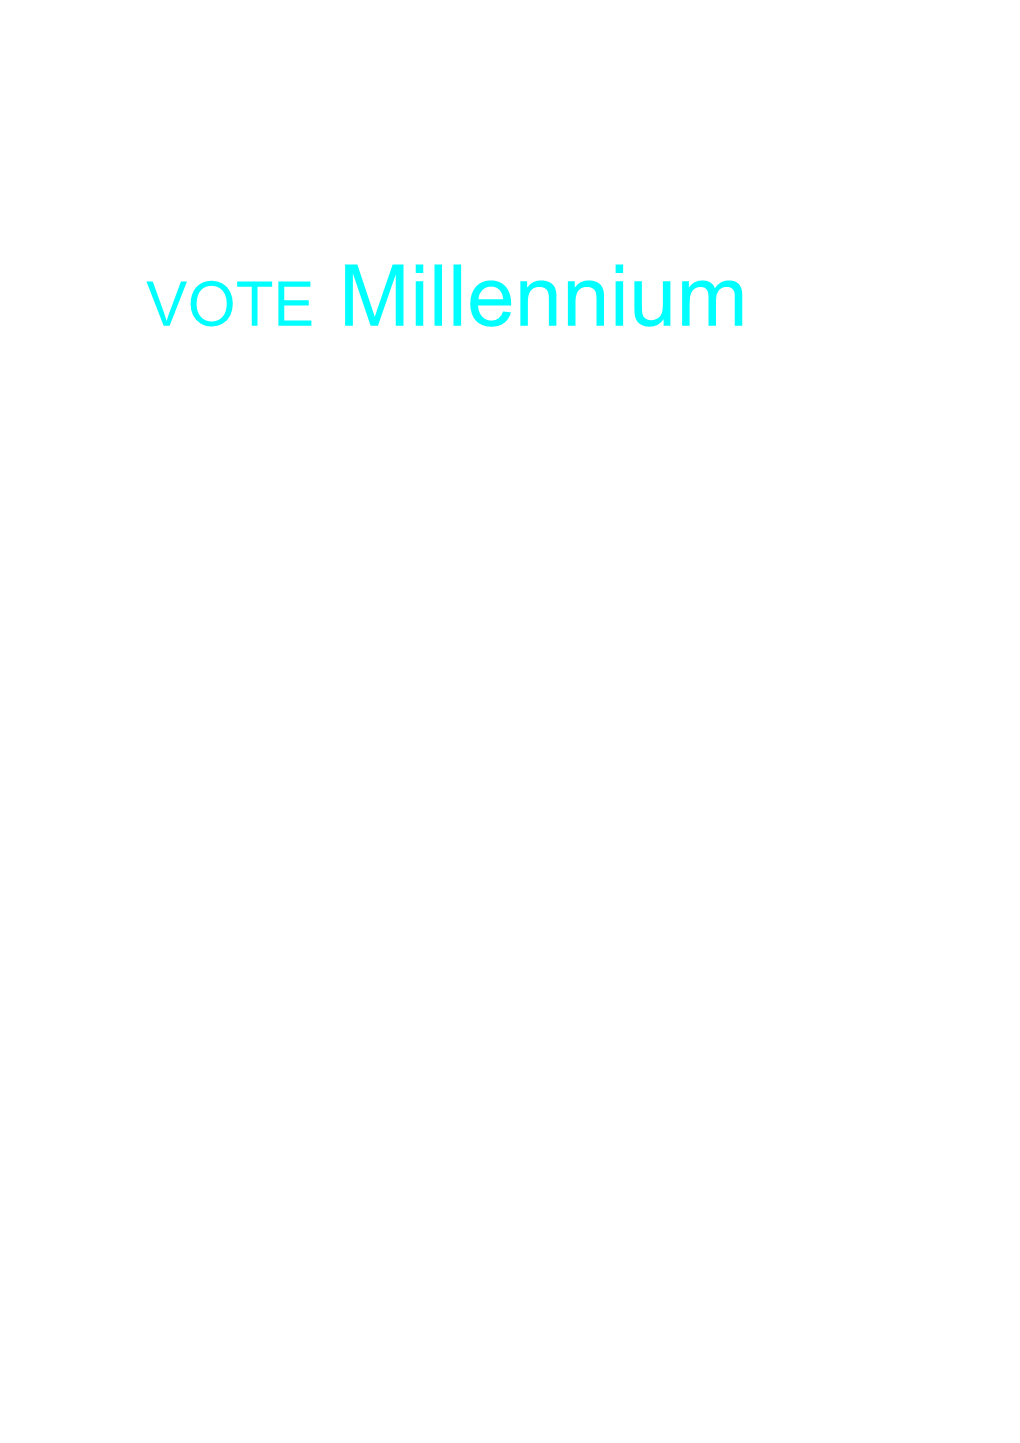 VOTE Millennium VOTE MILLENNIUM